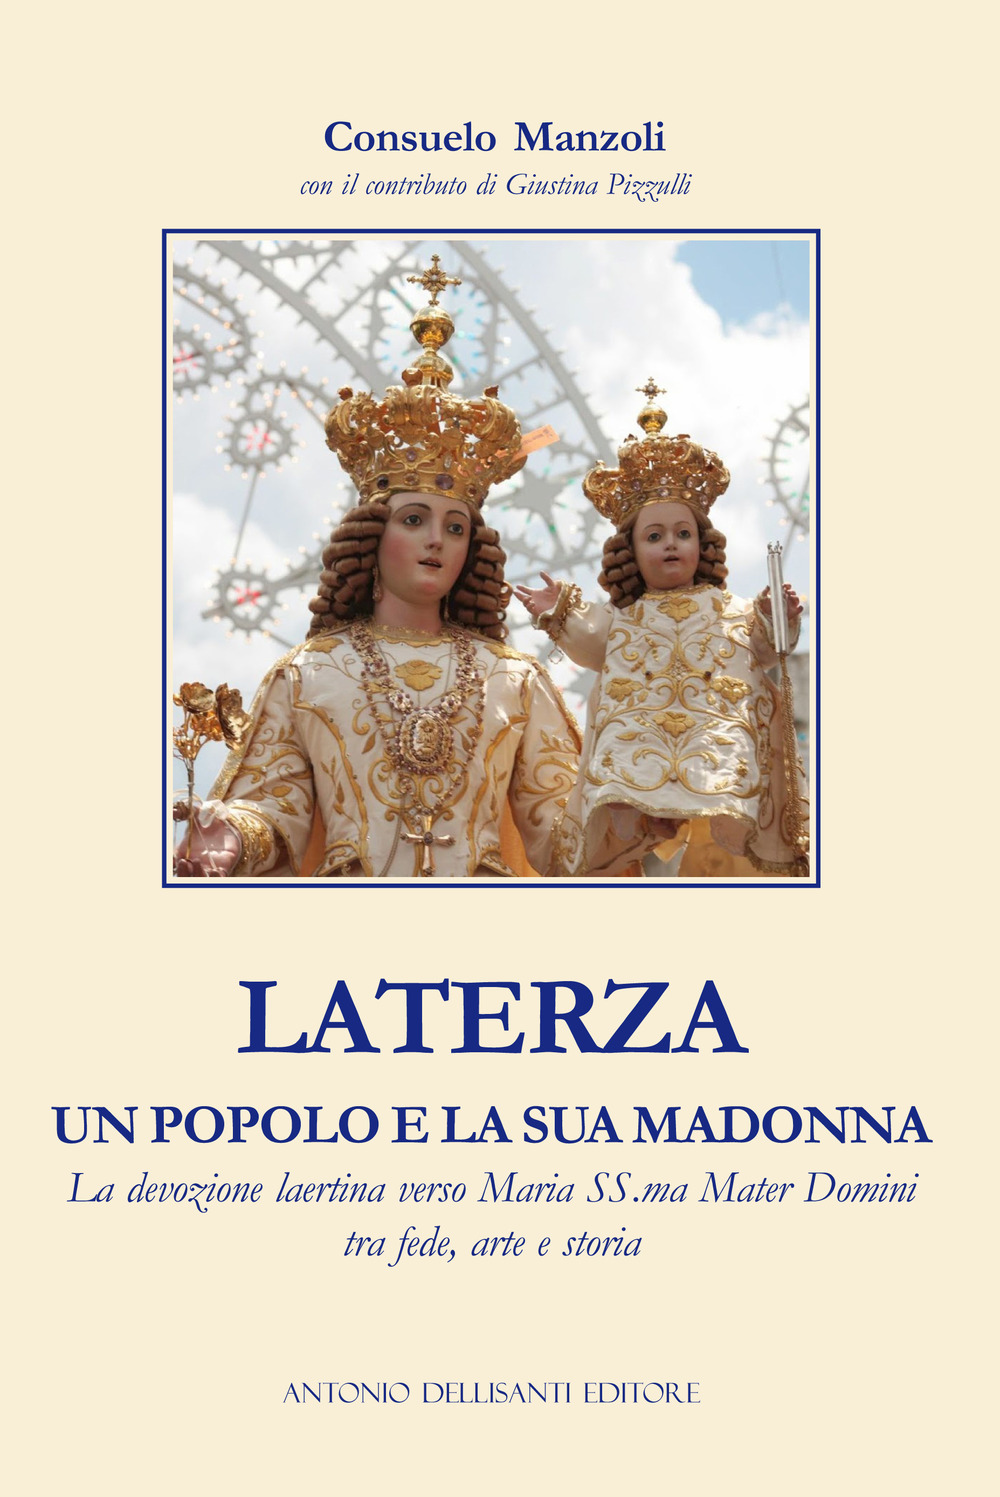 Laterza, un popolo e la sua Madonna. La devozione laertina verso Maria SS.ma Mater Domini tra fede, arte e storia